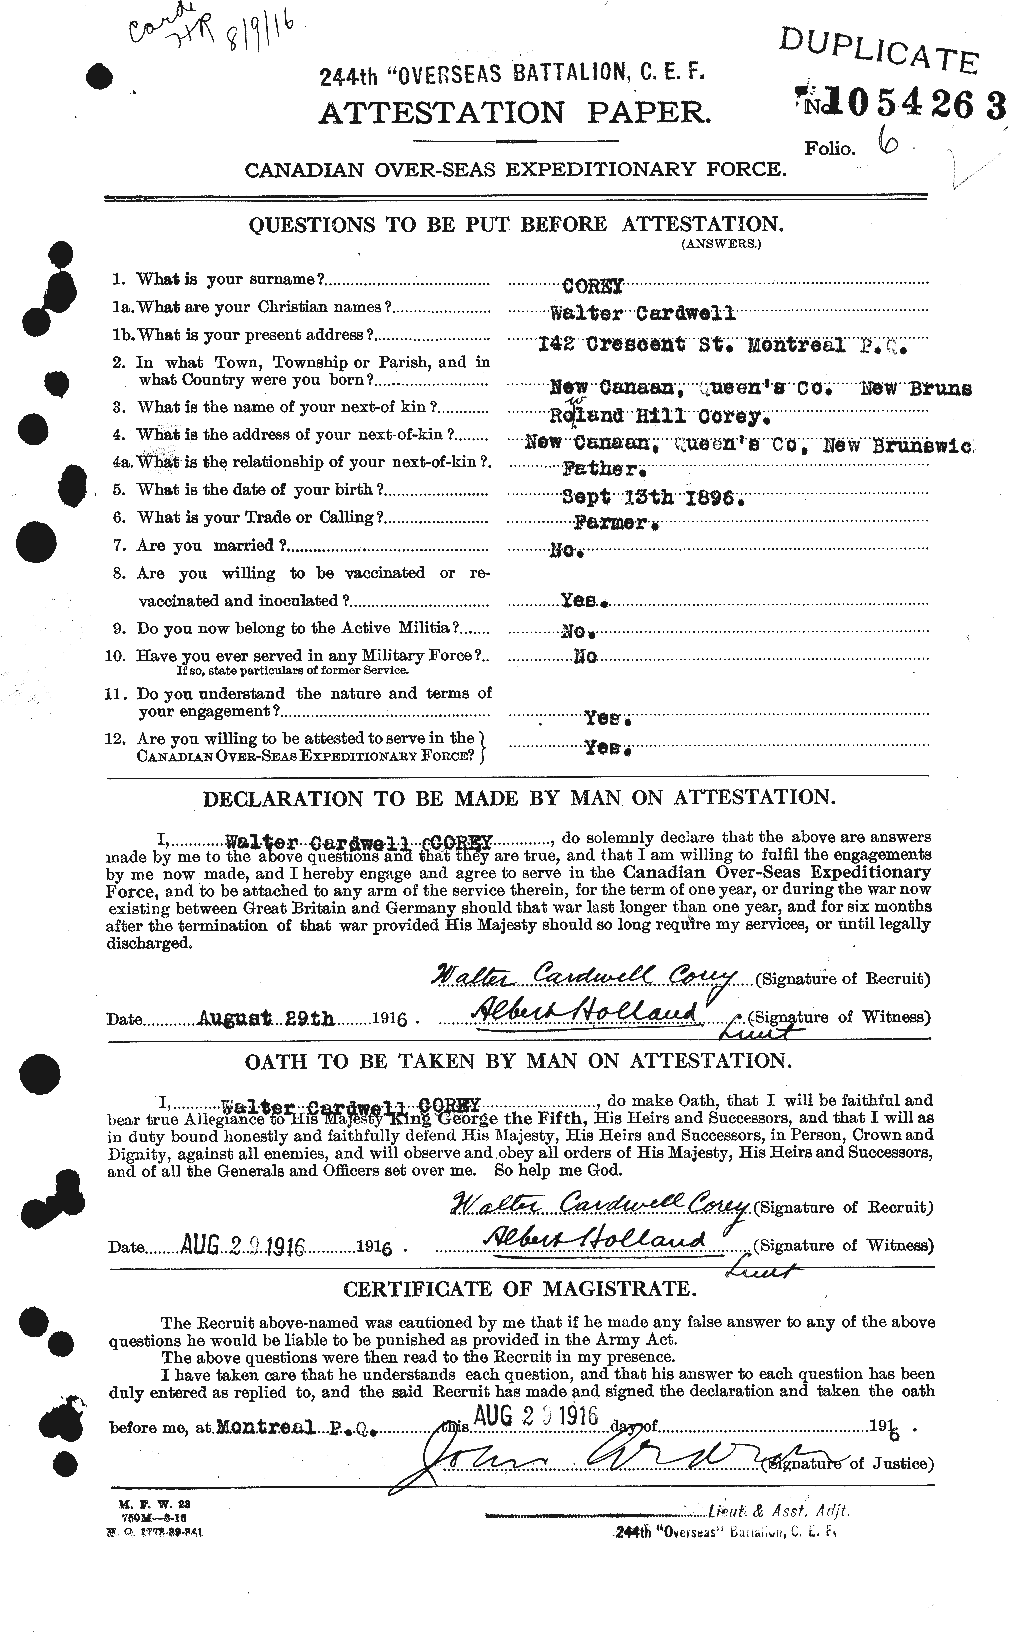 Dossiers du Personnel de la Première Guerre mondiale - CEC 054394a